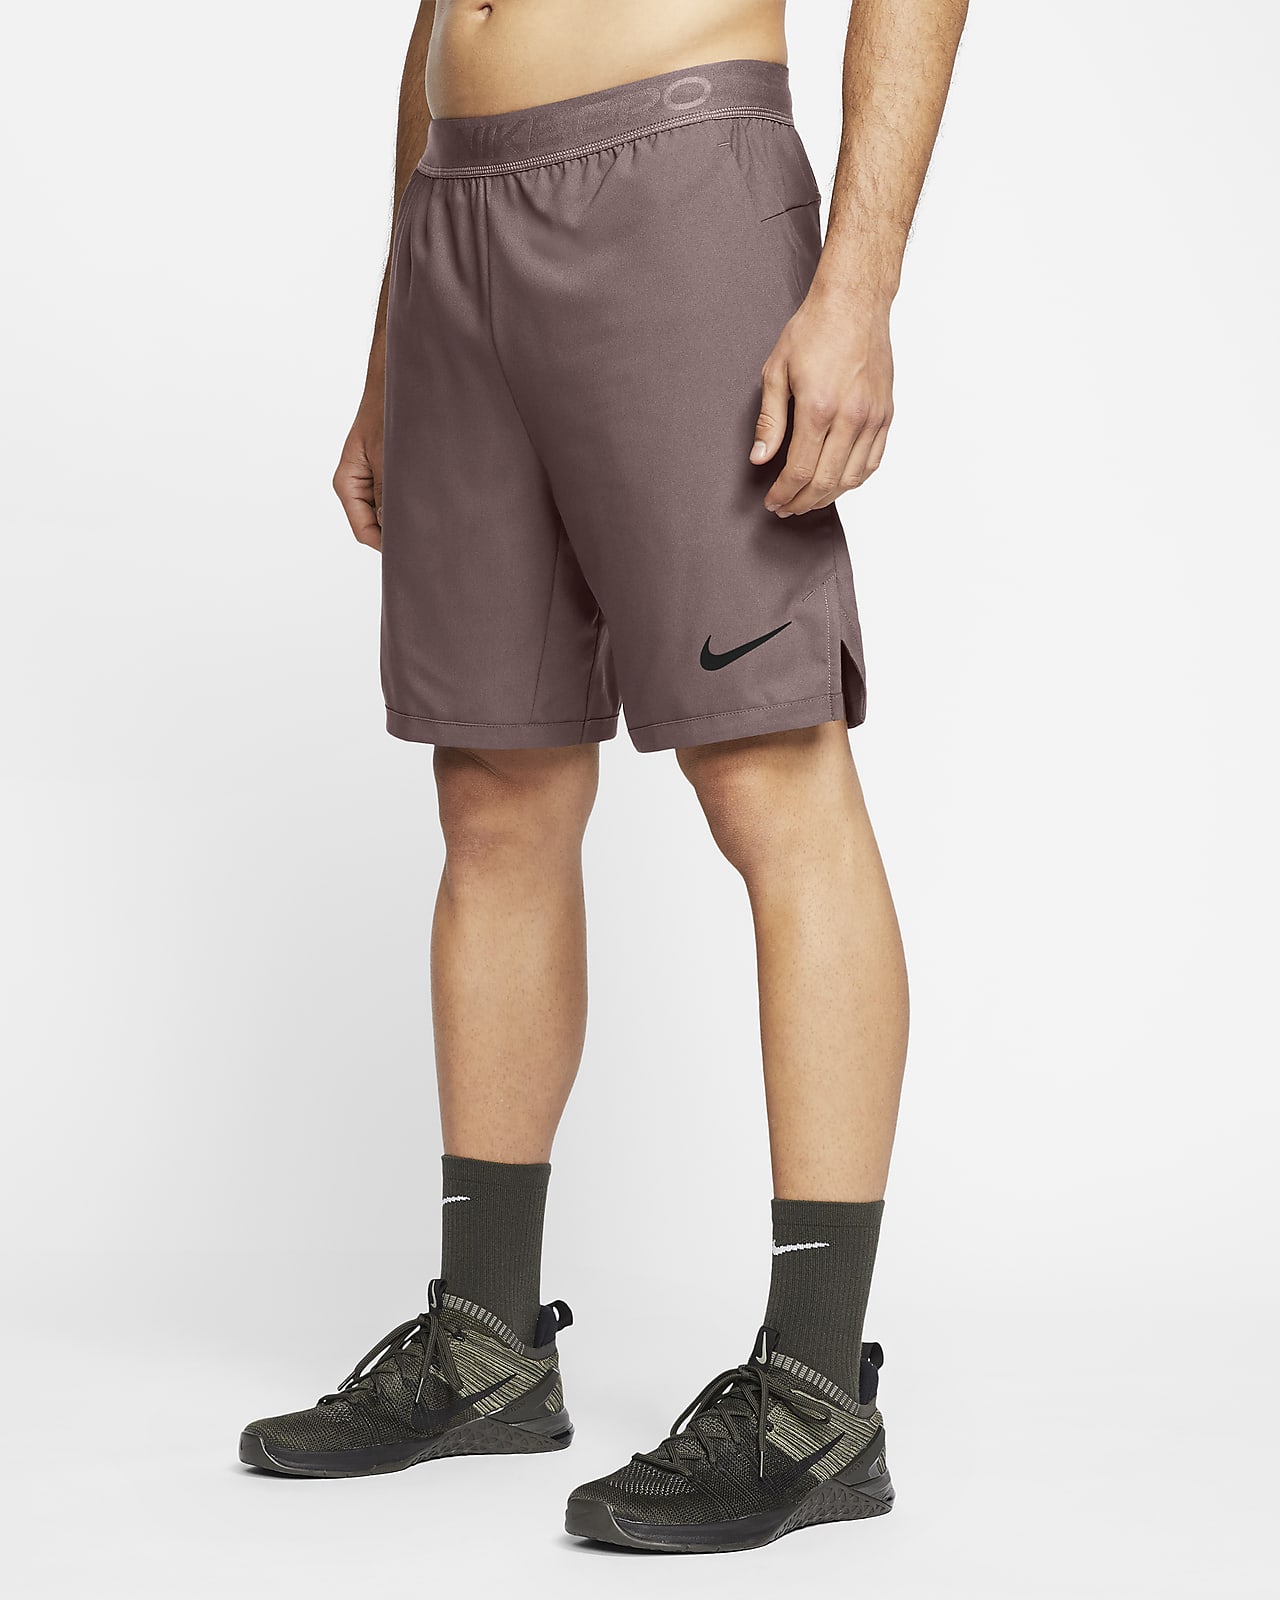 Shorts para hombre Nike Flex Vent Max.